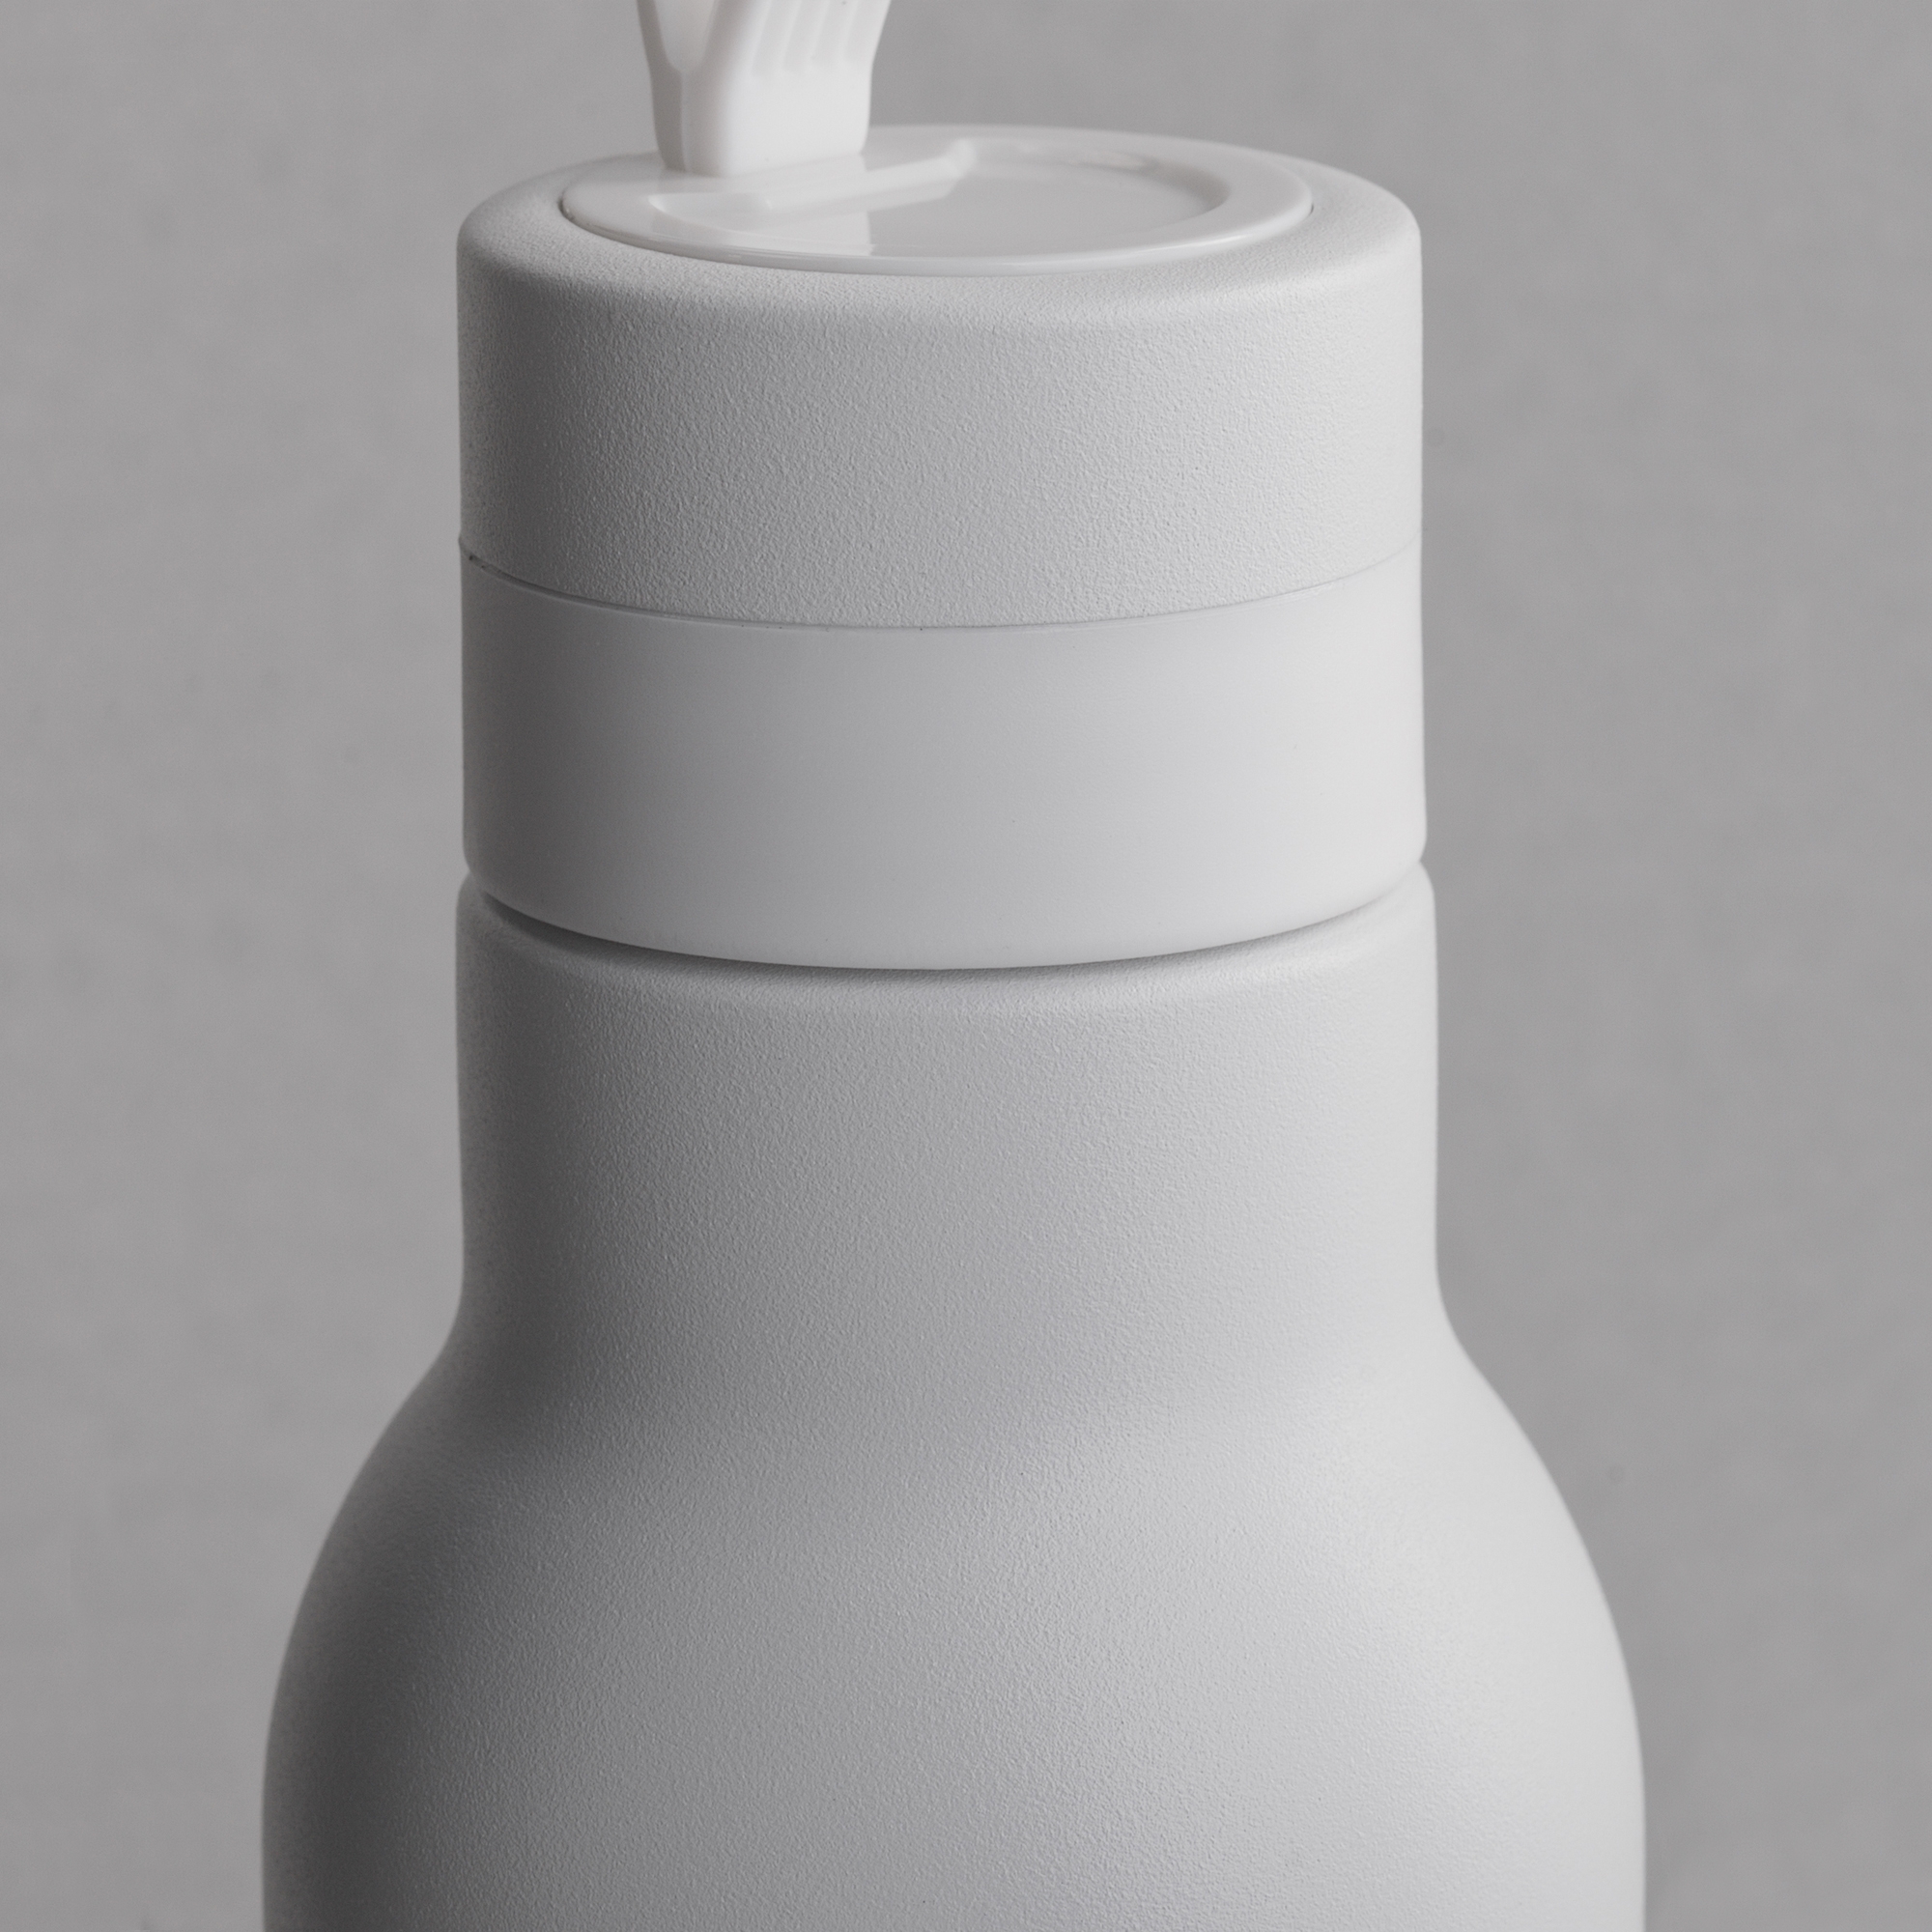 Бутылка для воды "Фитнес" 700 мл, покрытие пудра, белый, пластик/нержавеющая сталь/порошковое покрытие